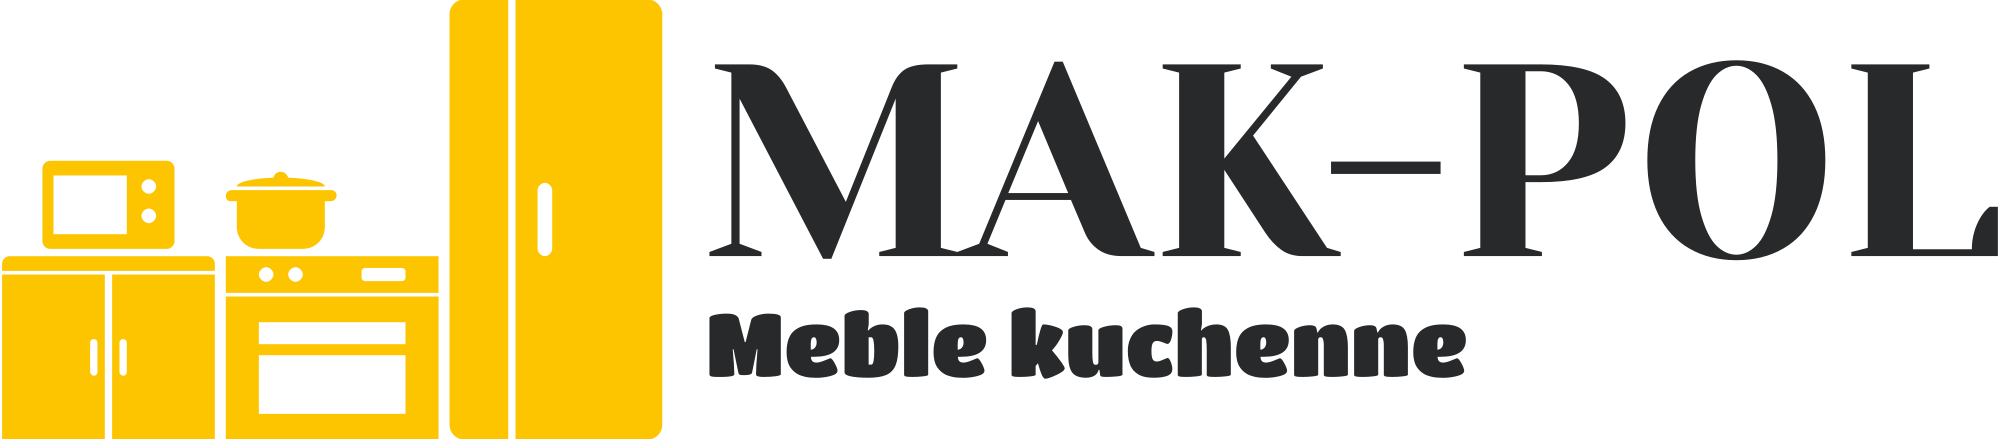 Meble kuchenne | Kuchnie MAK-POL